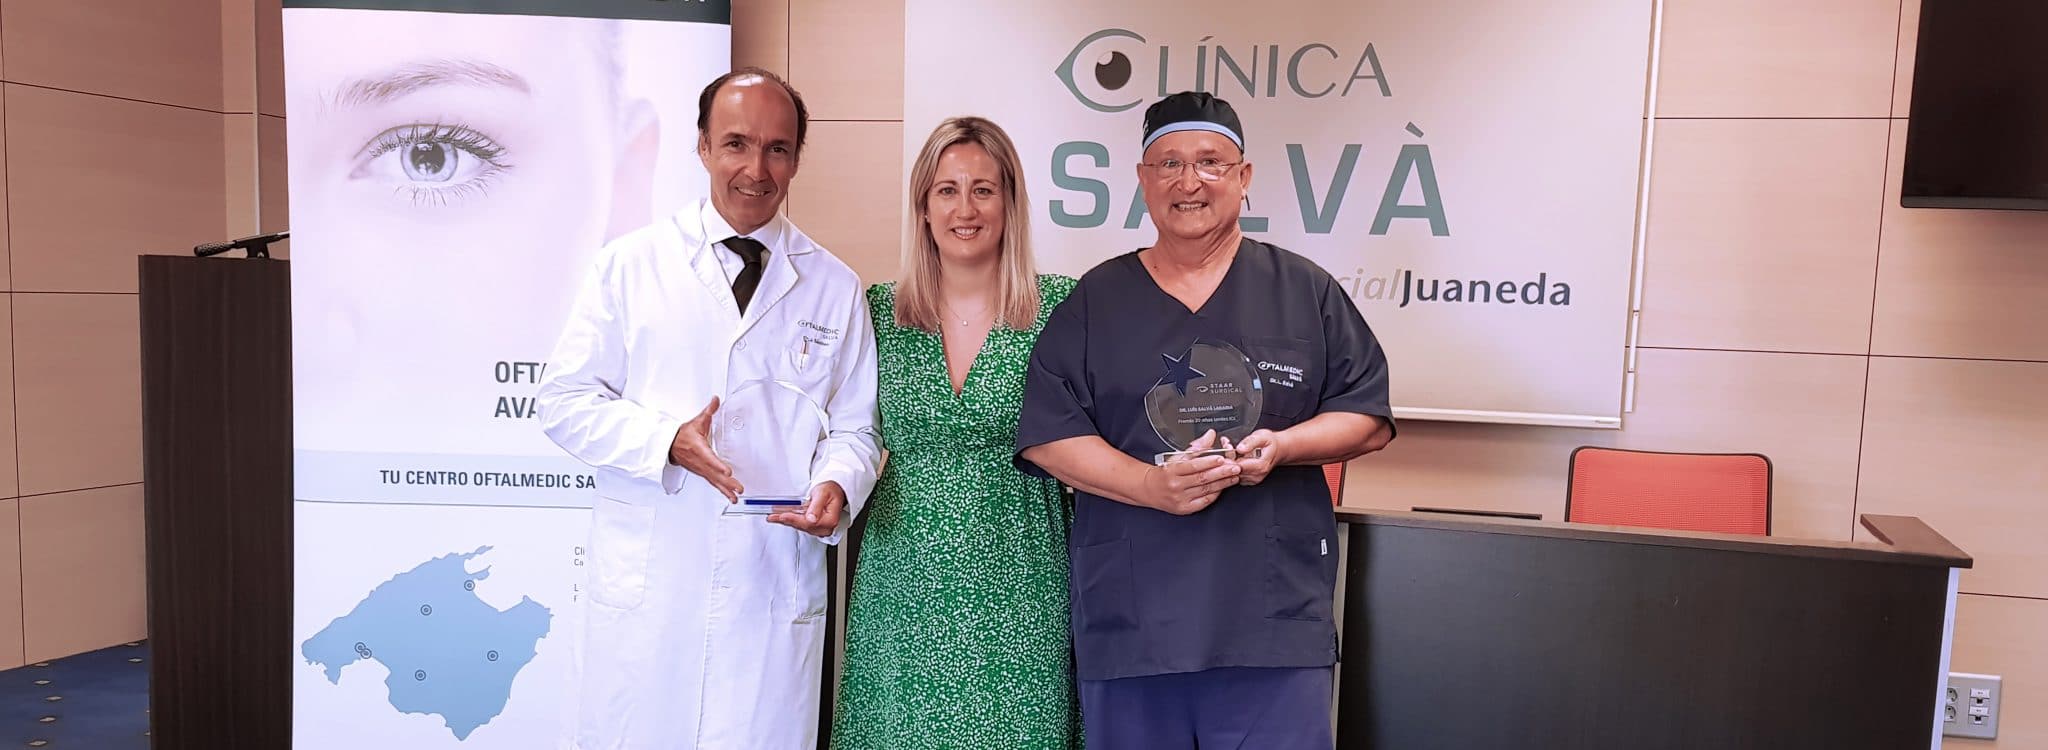 Oftalmedic Salvà, premiado por sus 20 años implantando lentes ICL